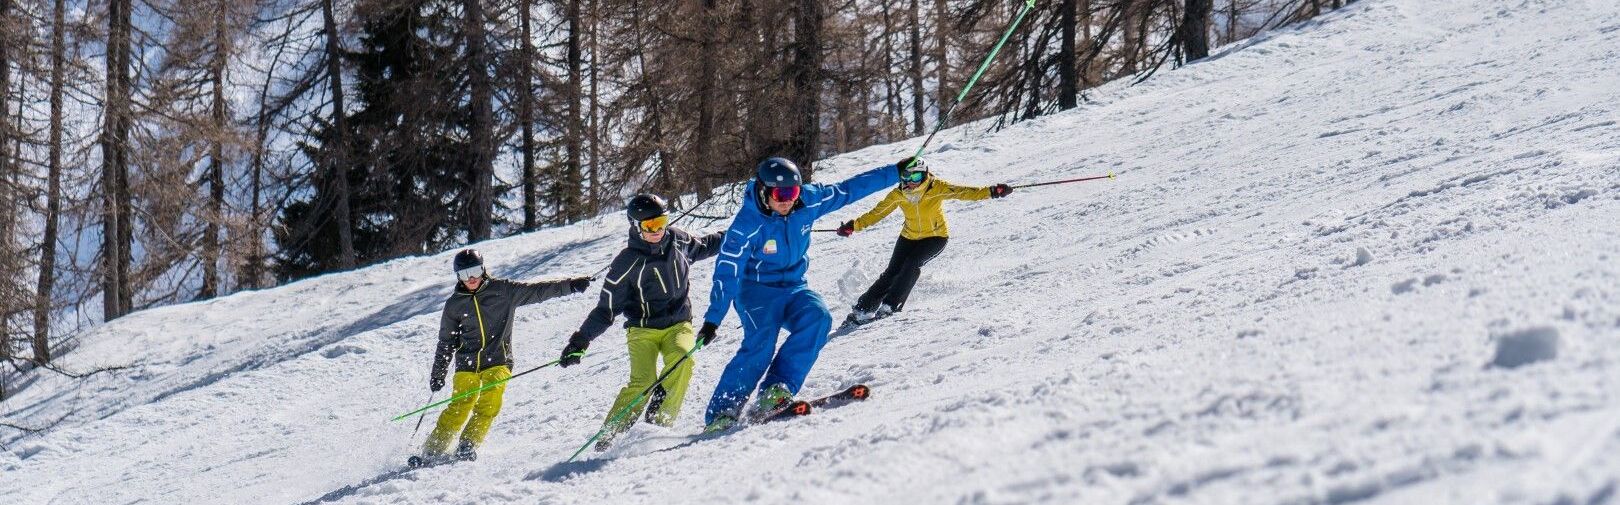 Skikurs in Flachau ab 16 Jahren - Skischule Flachau 